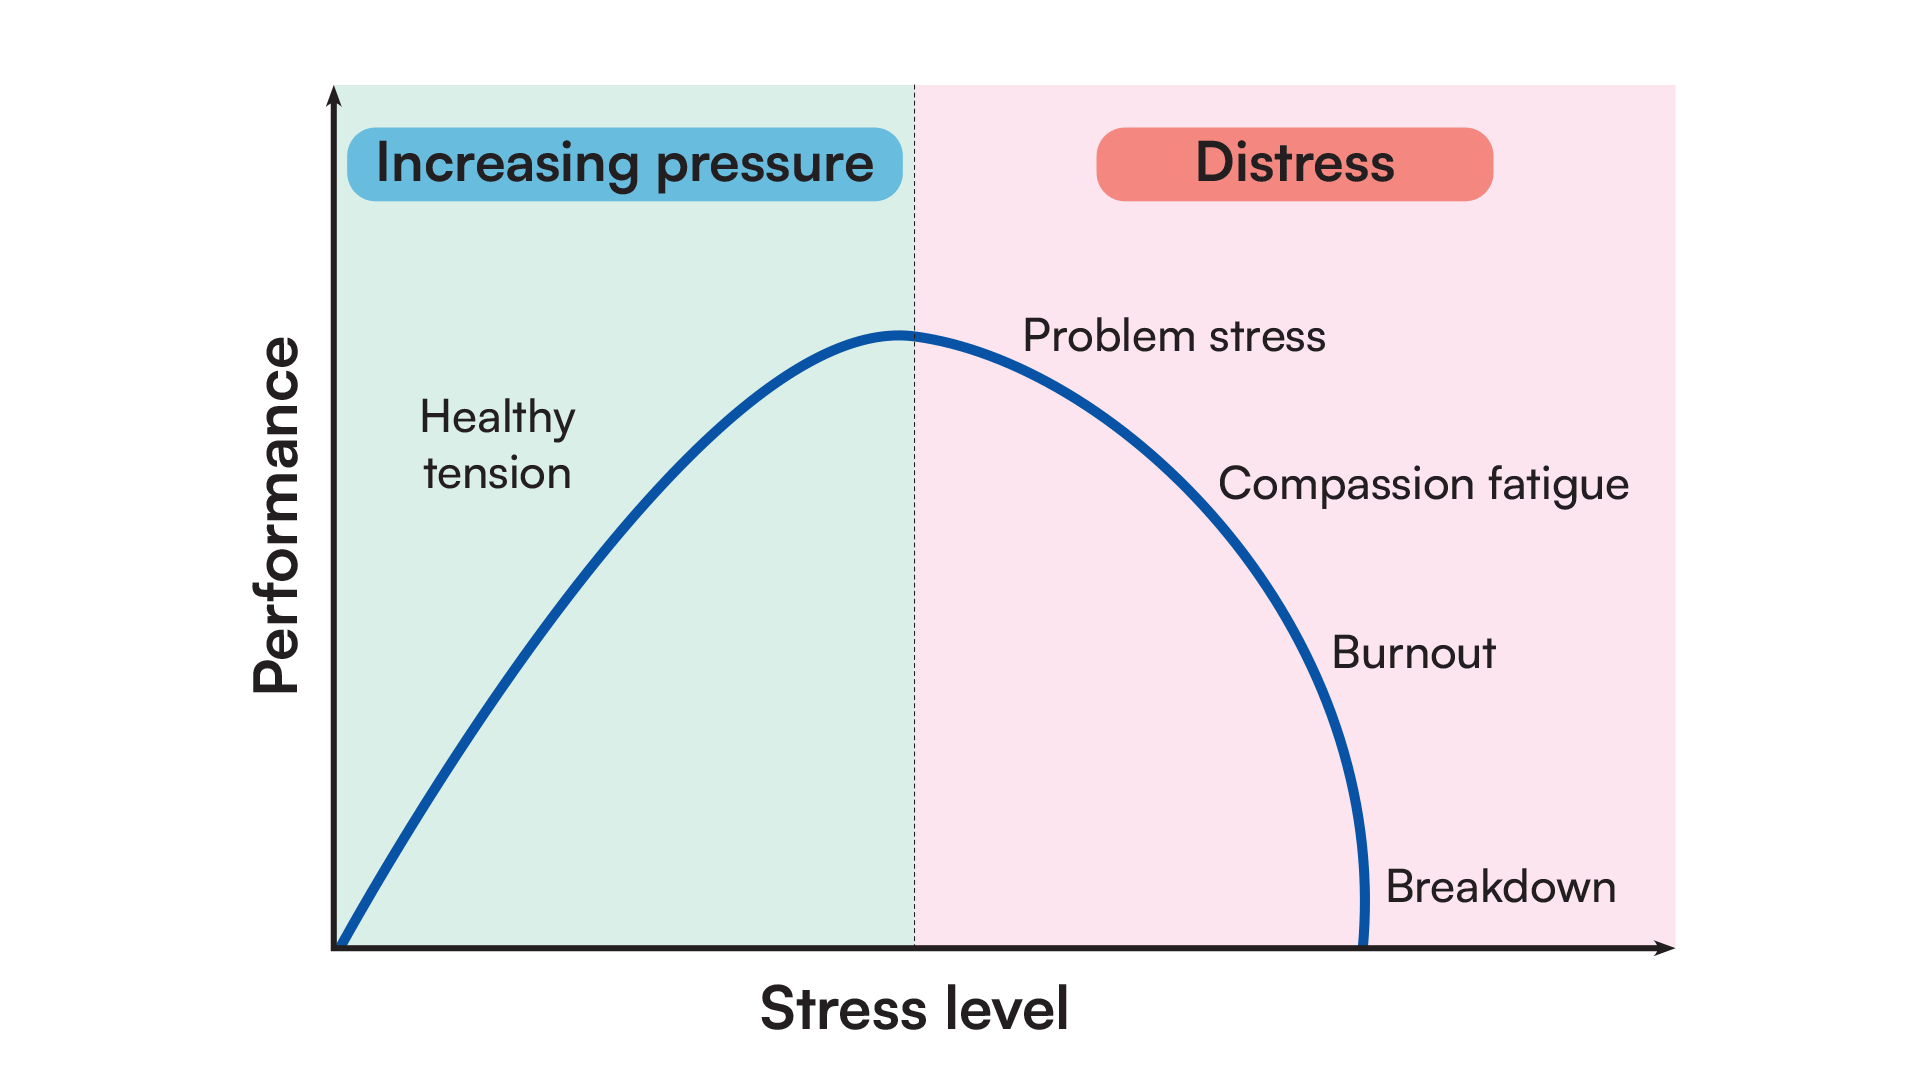 Increasing pressure/distress